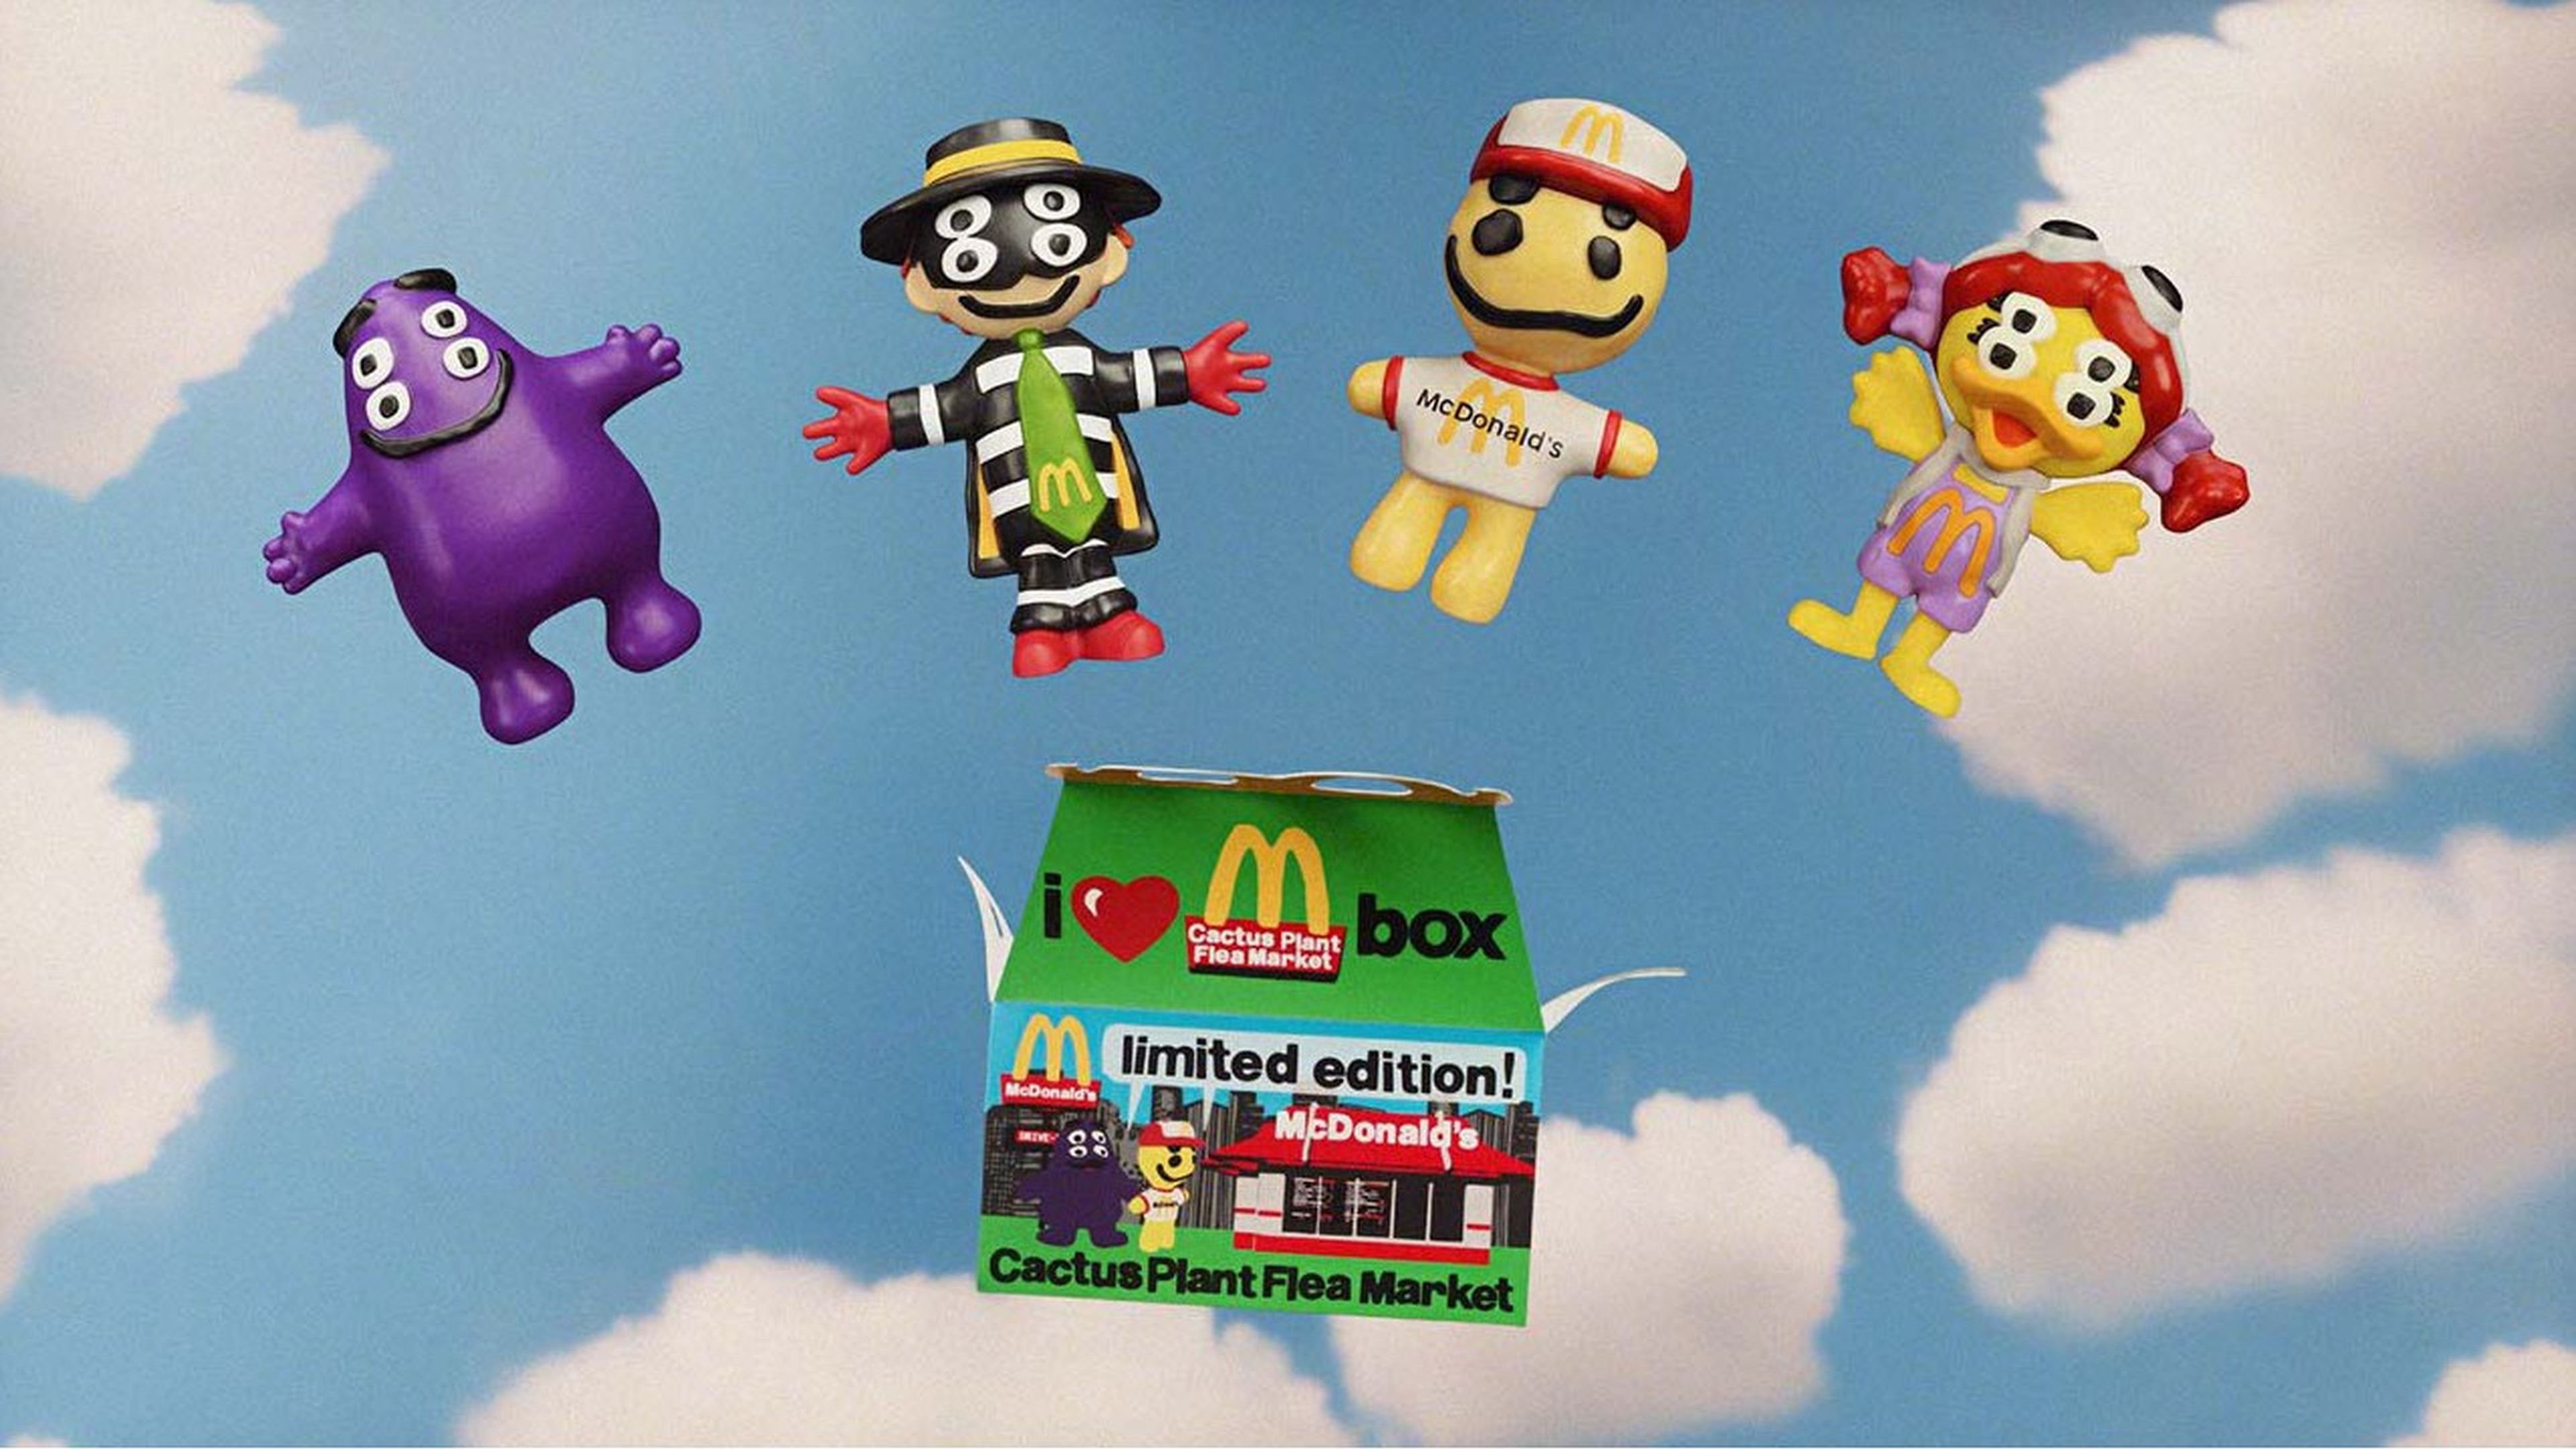 Emular músico Instantáneamente Estos juguetes de McDonald's se venden actualmente en eBay por hasta 20.000  dólares | Computer Hoy